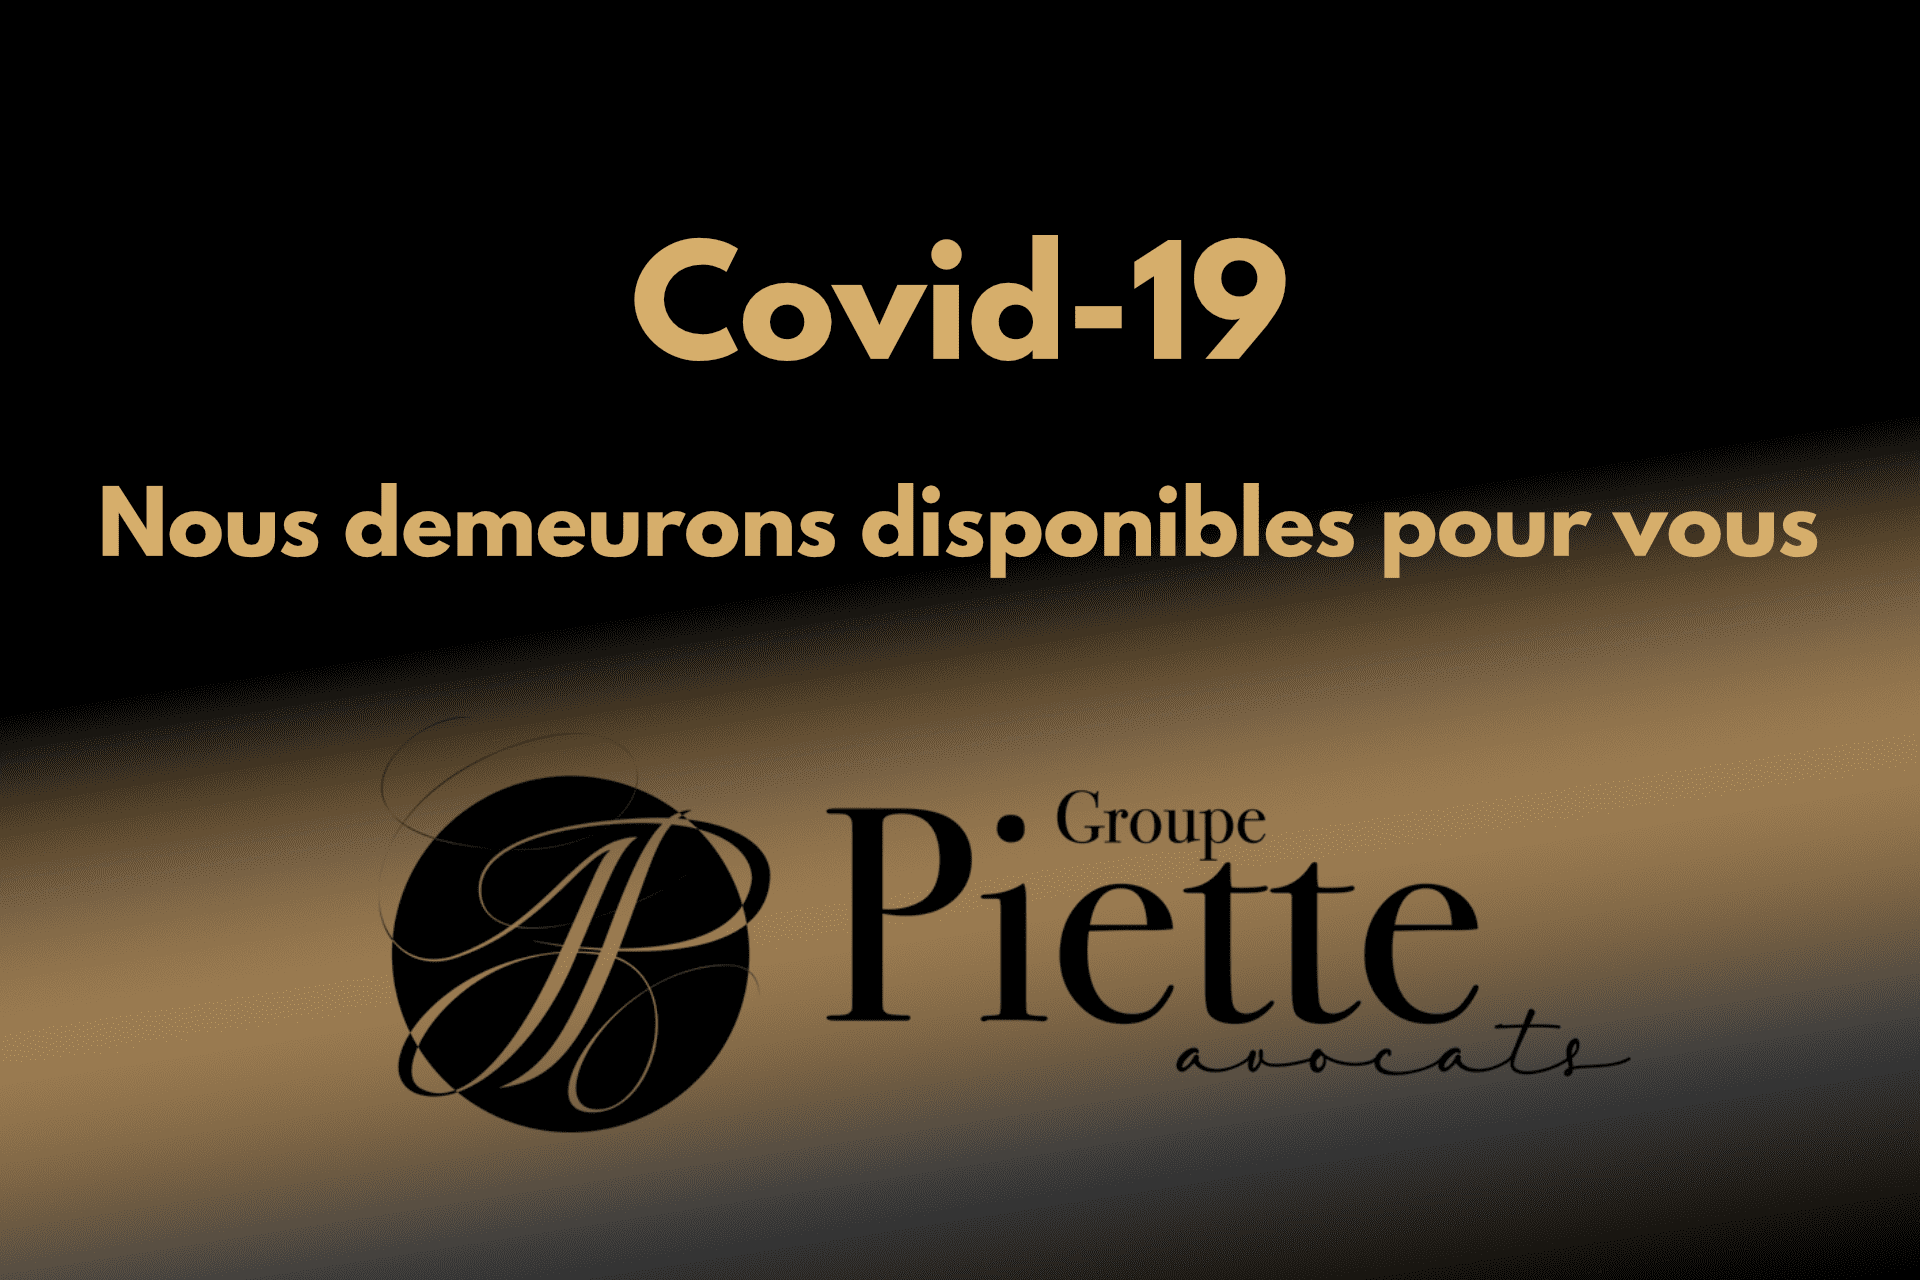 Covid-19 : Groupe Piette Avocats demeure là pour vous - Granby - Cowansville